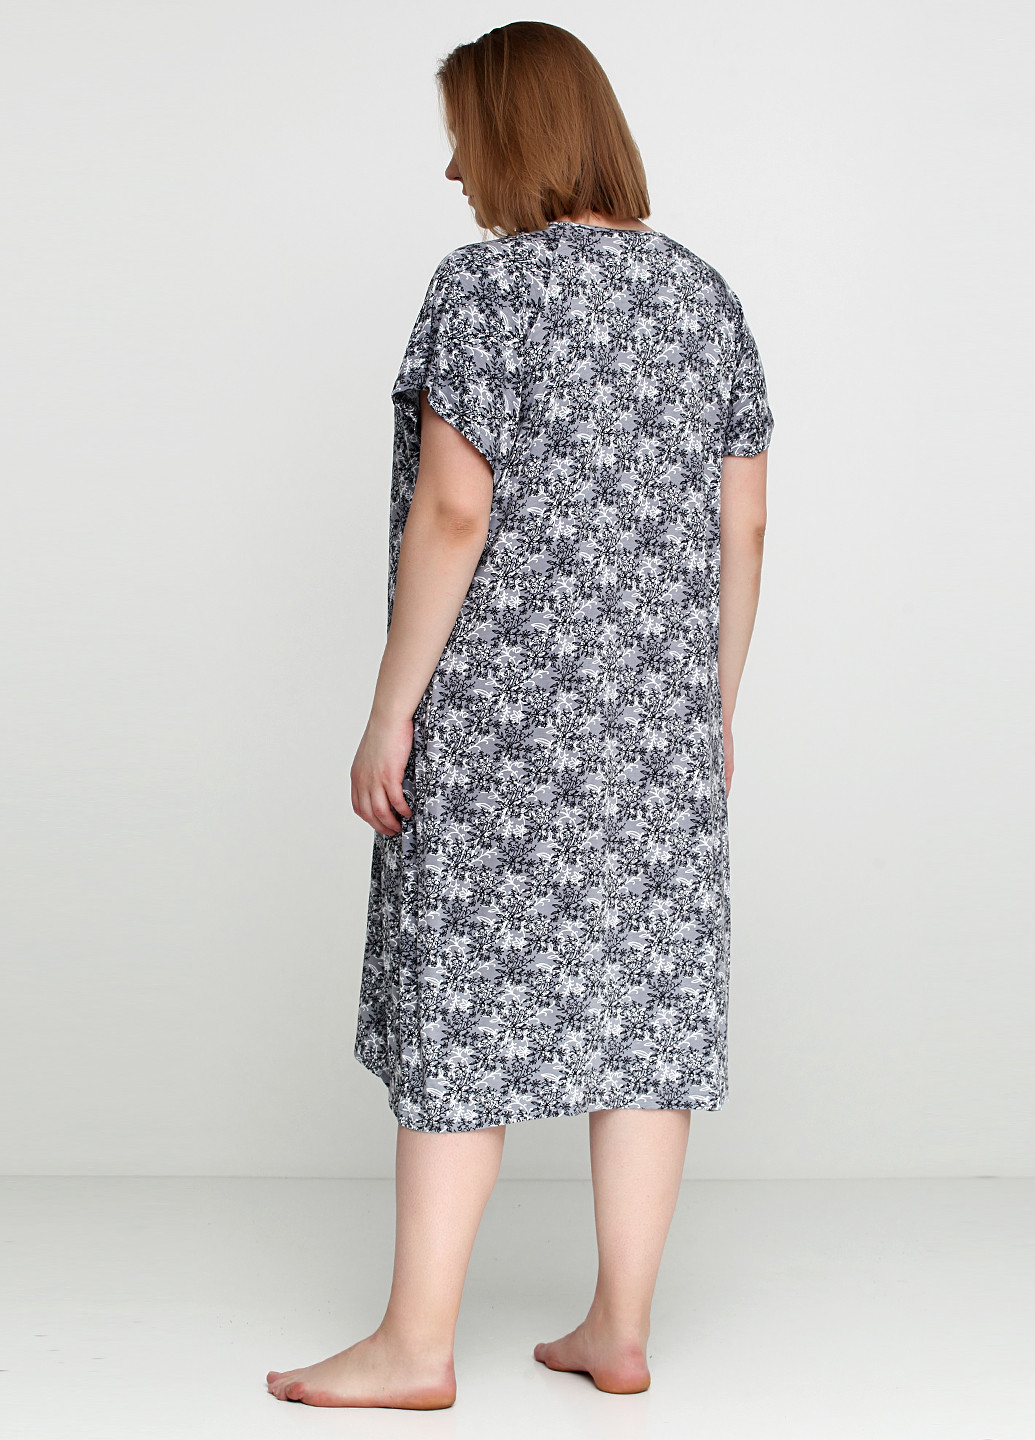 Сіра домашній сукня COCOON з абстрактним візерунком